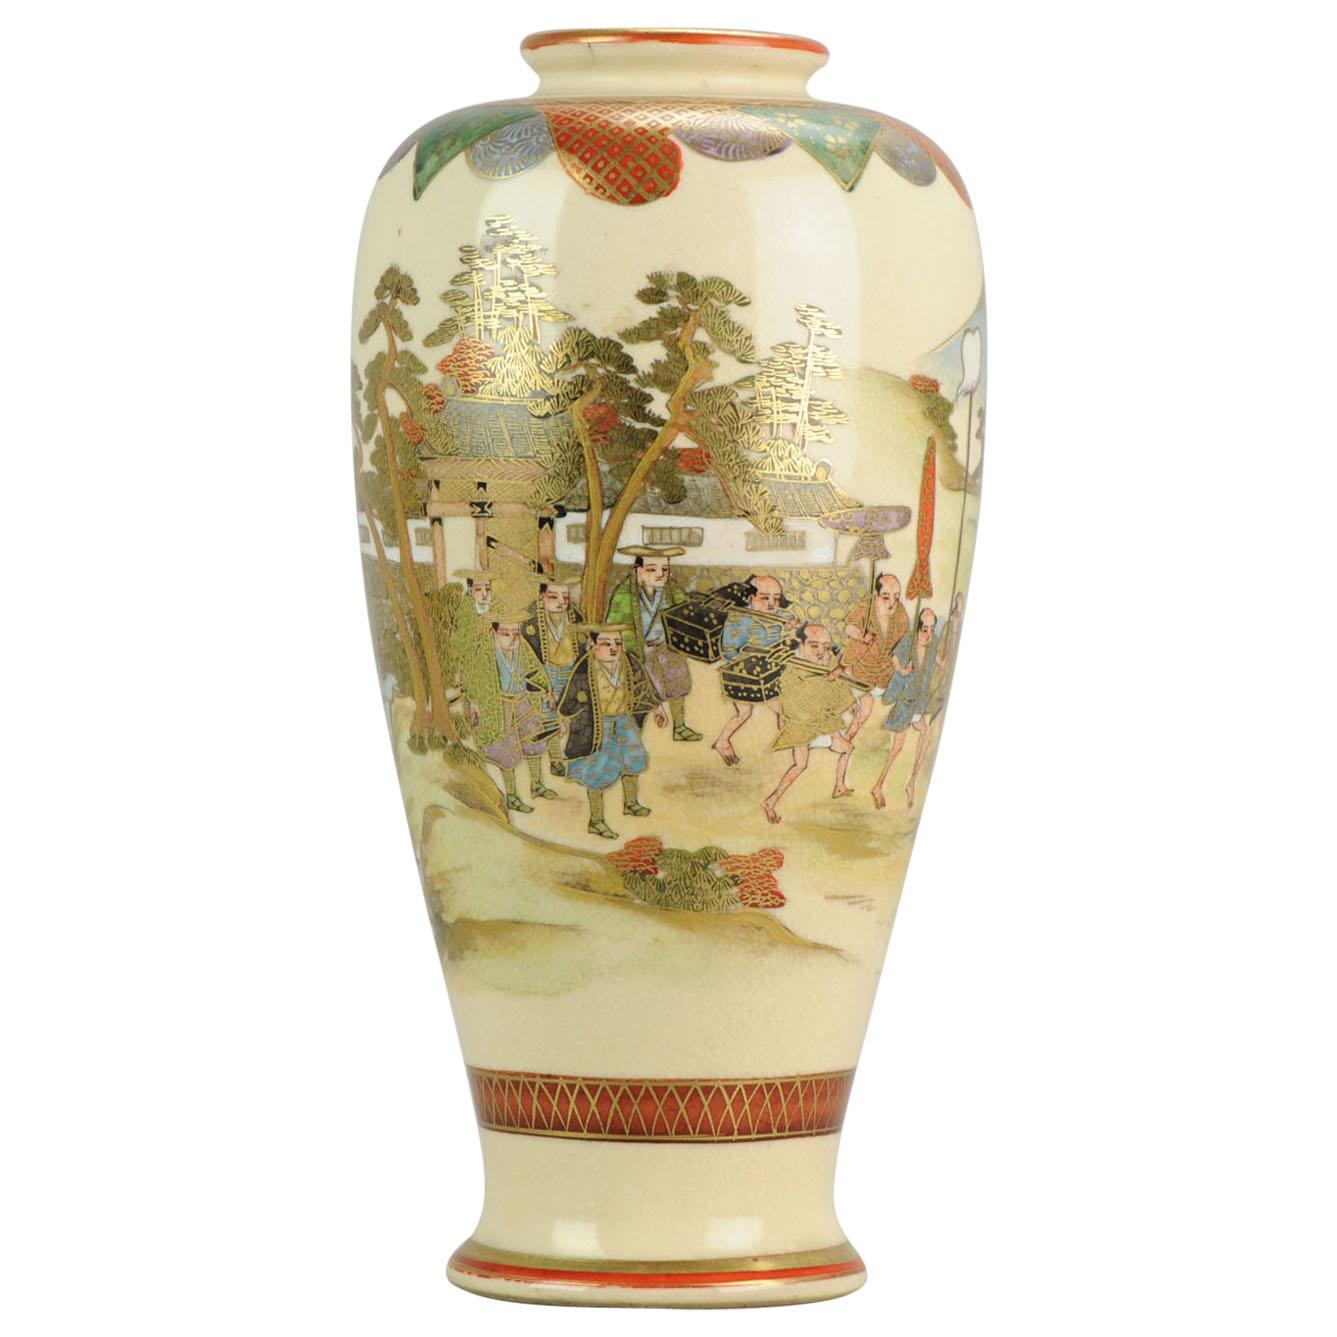 Antiquité Meiji 19ème siècle Japonais Satsuma Vase Guerriers Figures Marqué Base